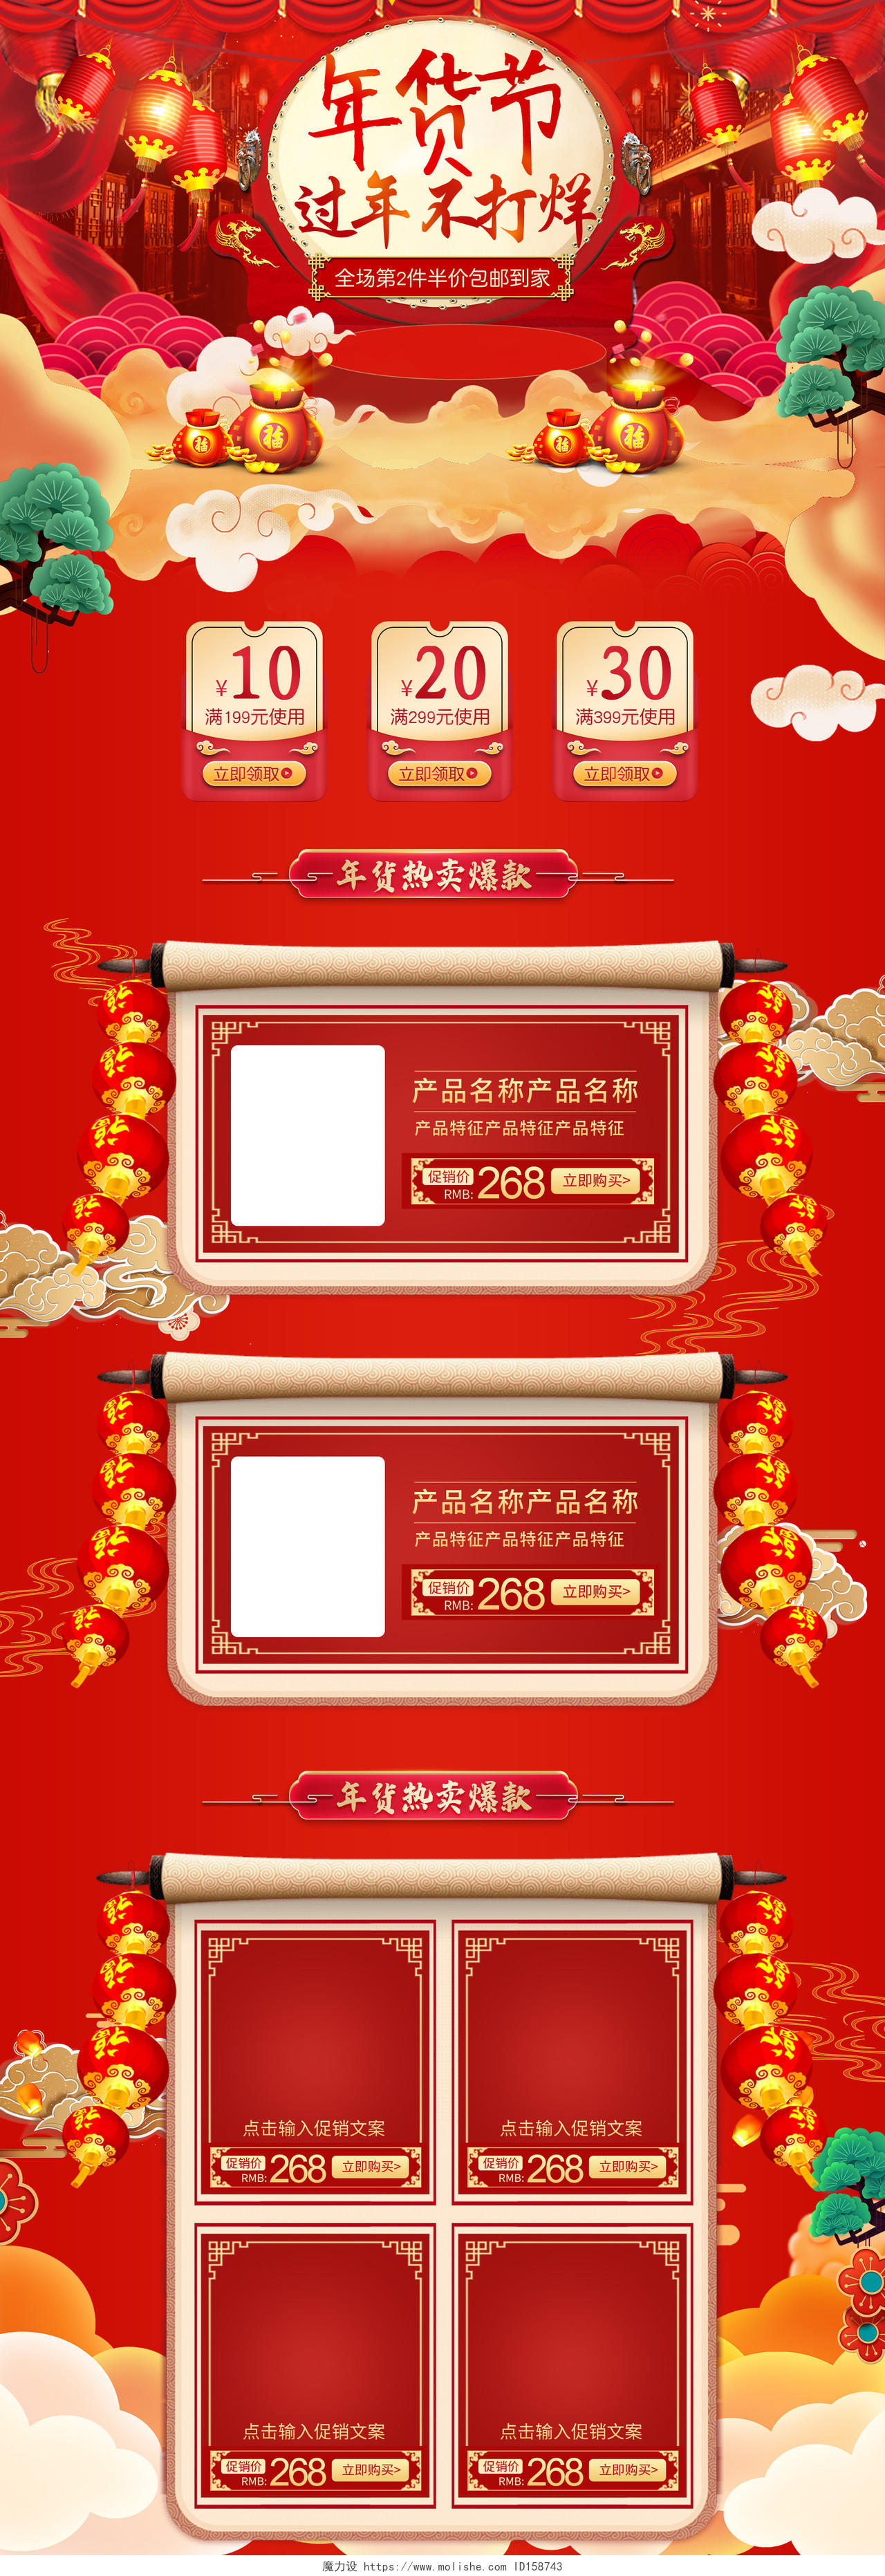 中国风红色喜庆手绘卷轴年货节过年不打烊年货大街PC手机端首页